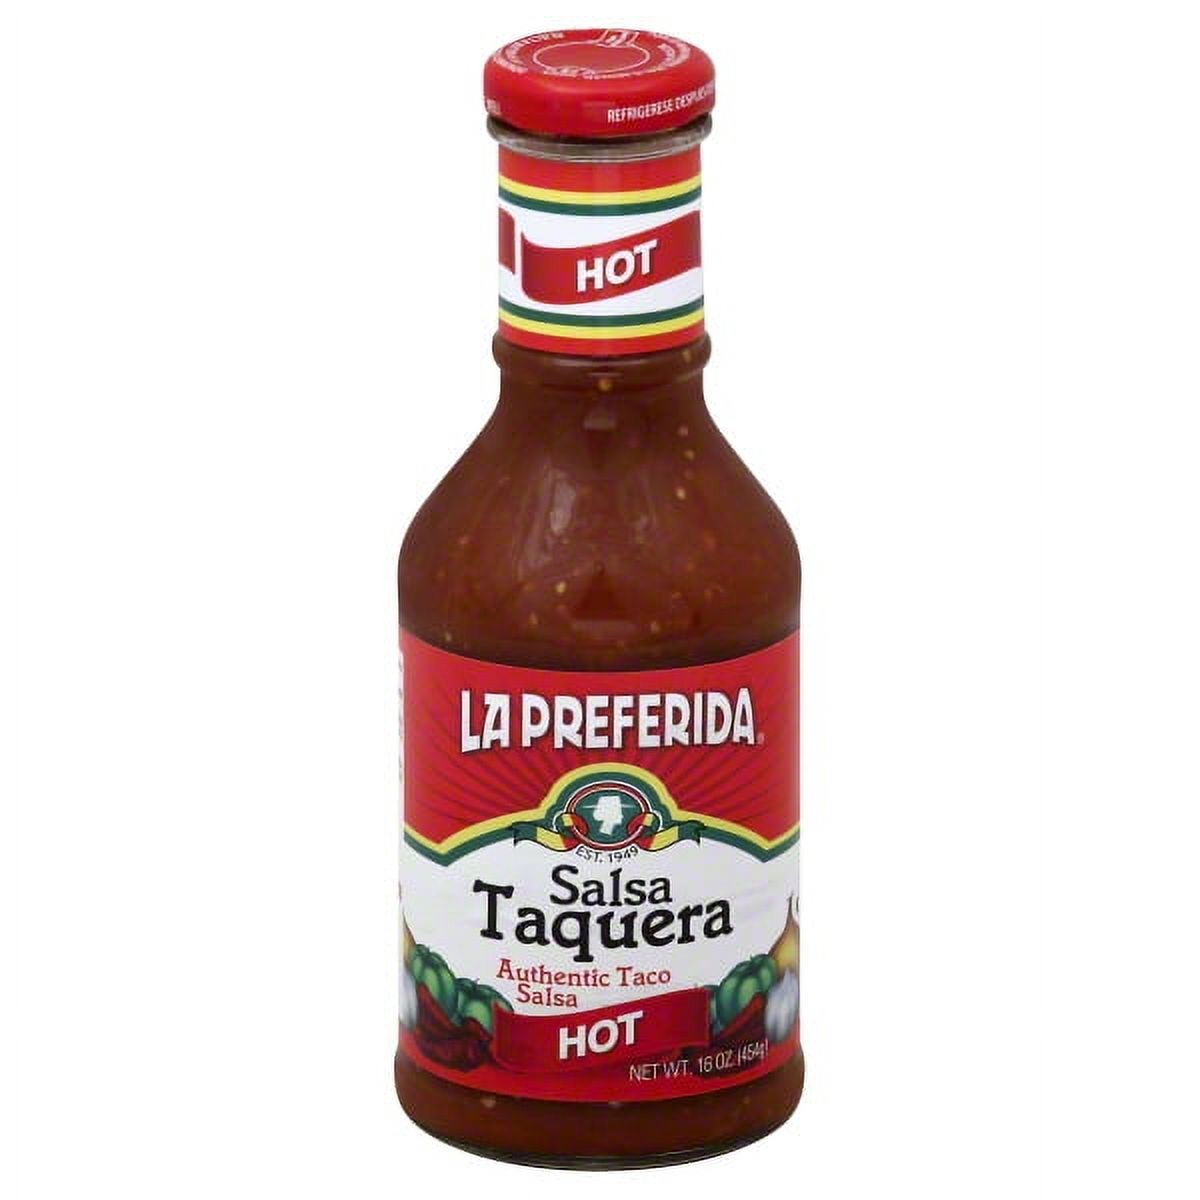 La Preferida Salsa Taquera - image 1 of 5